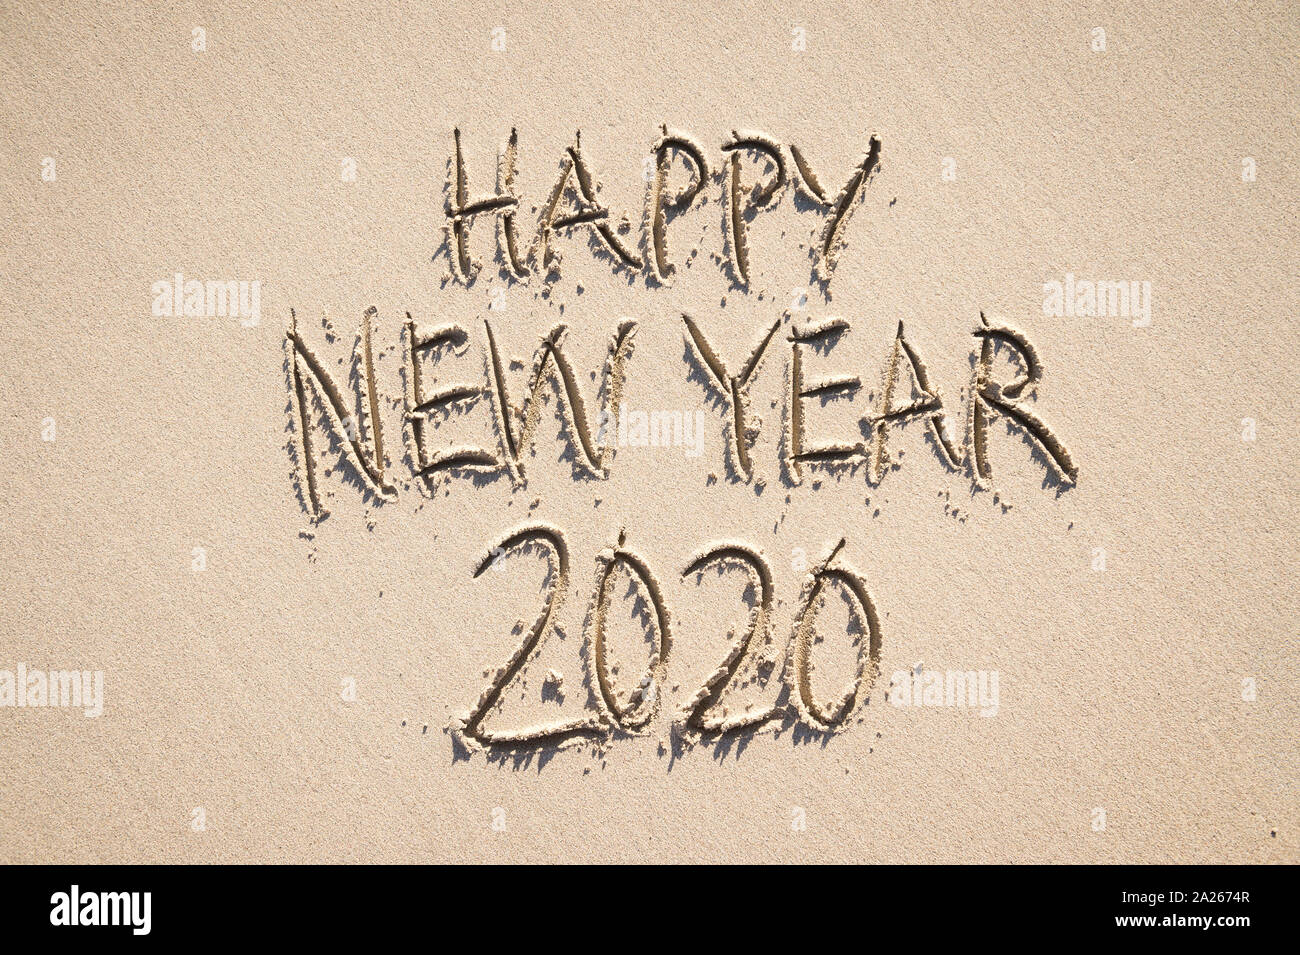 Frohes Neues Jahr 2020 Nachricht handschriftlich in angehobener strukturierte Briefe an einem Sandstrand mit glatten Raum kopieren Stockfoto